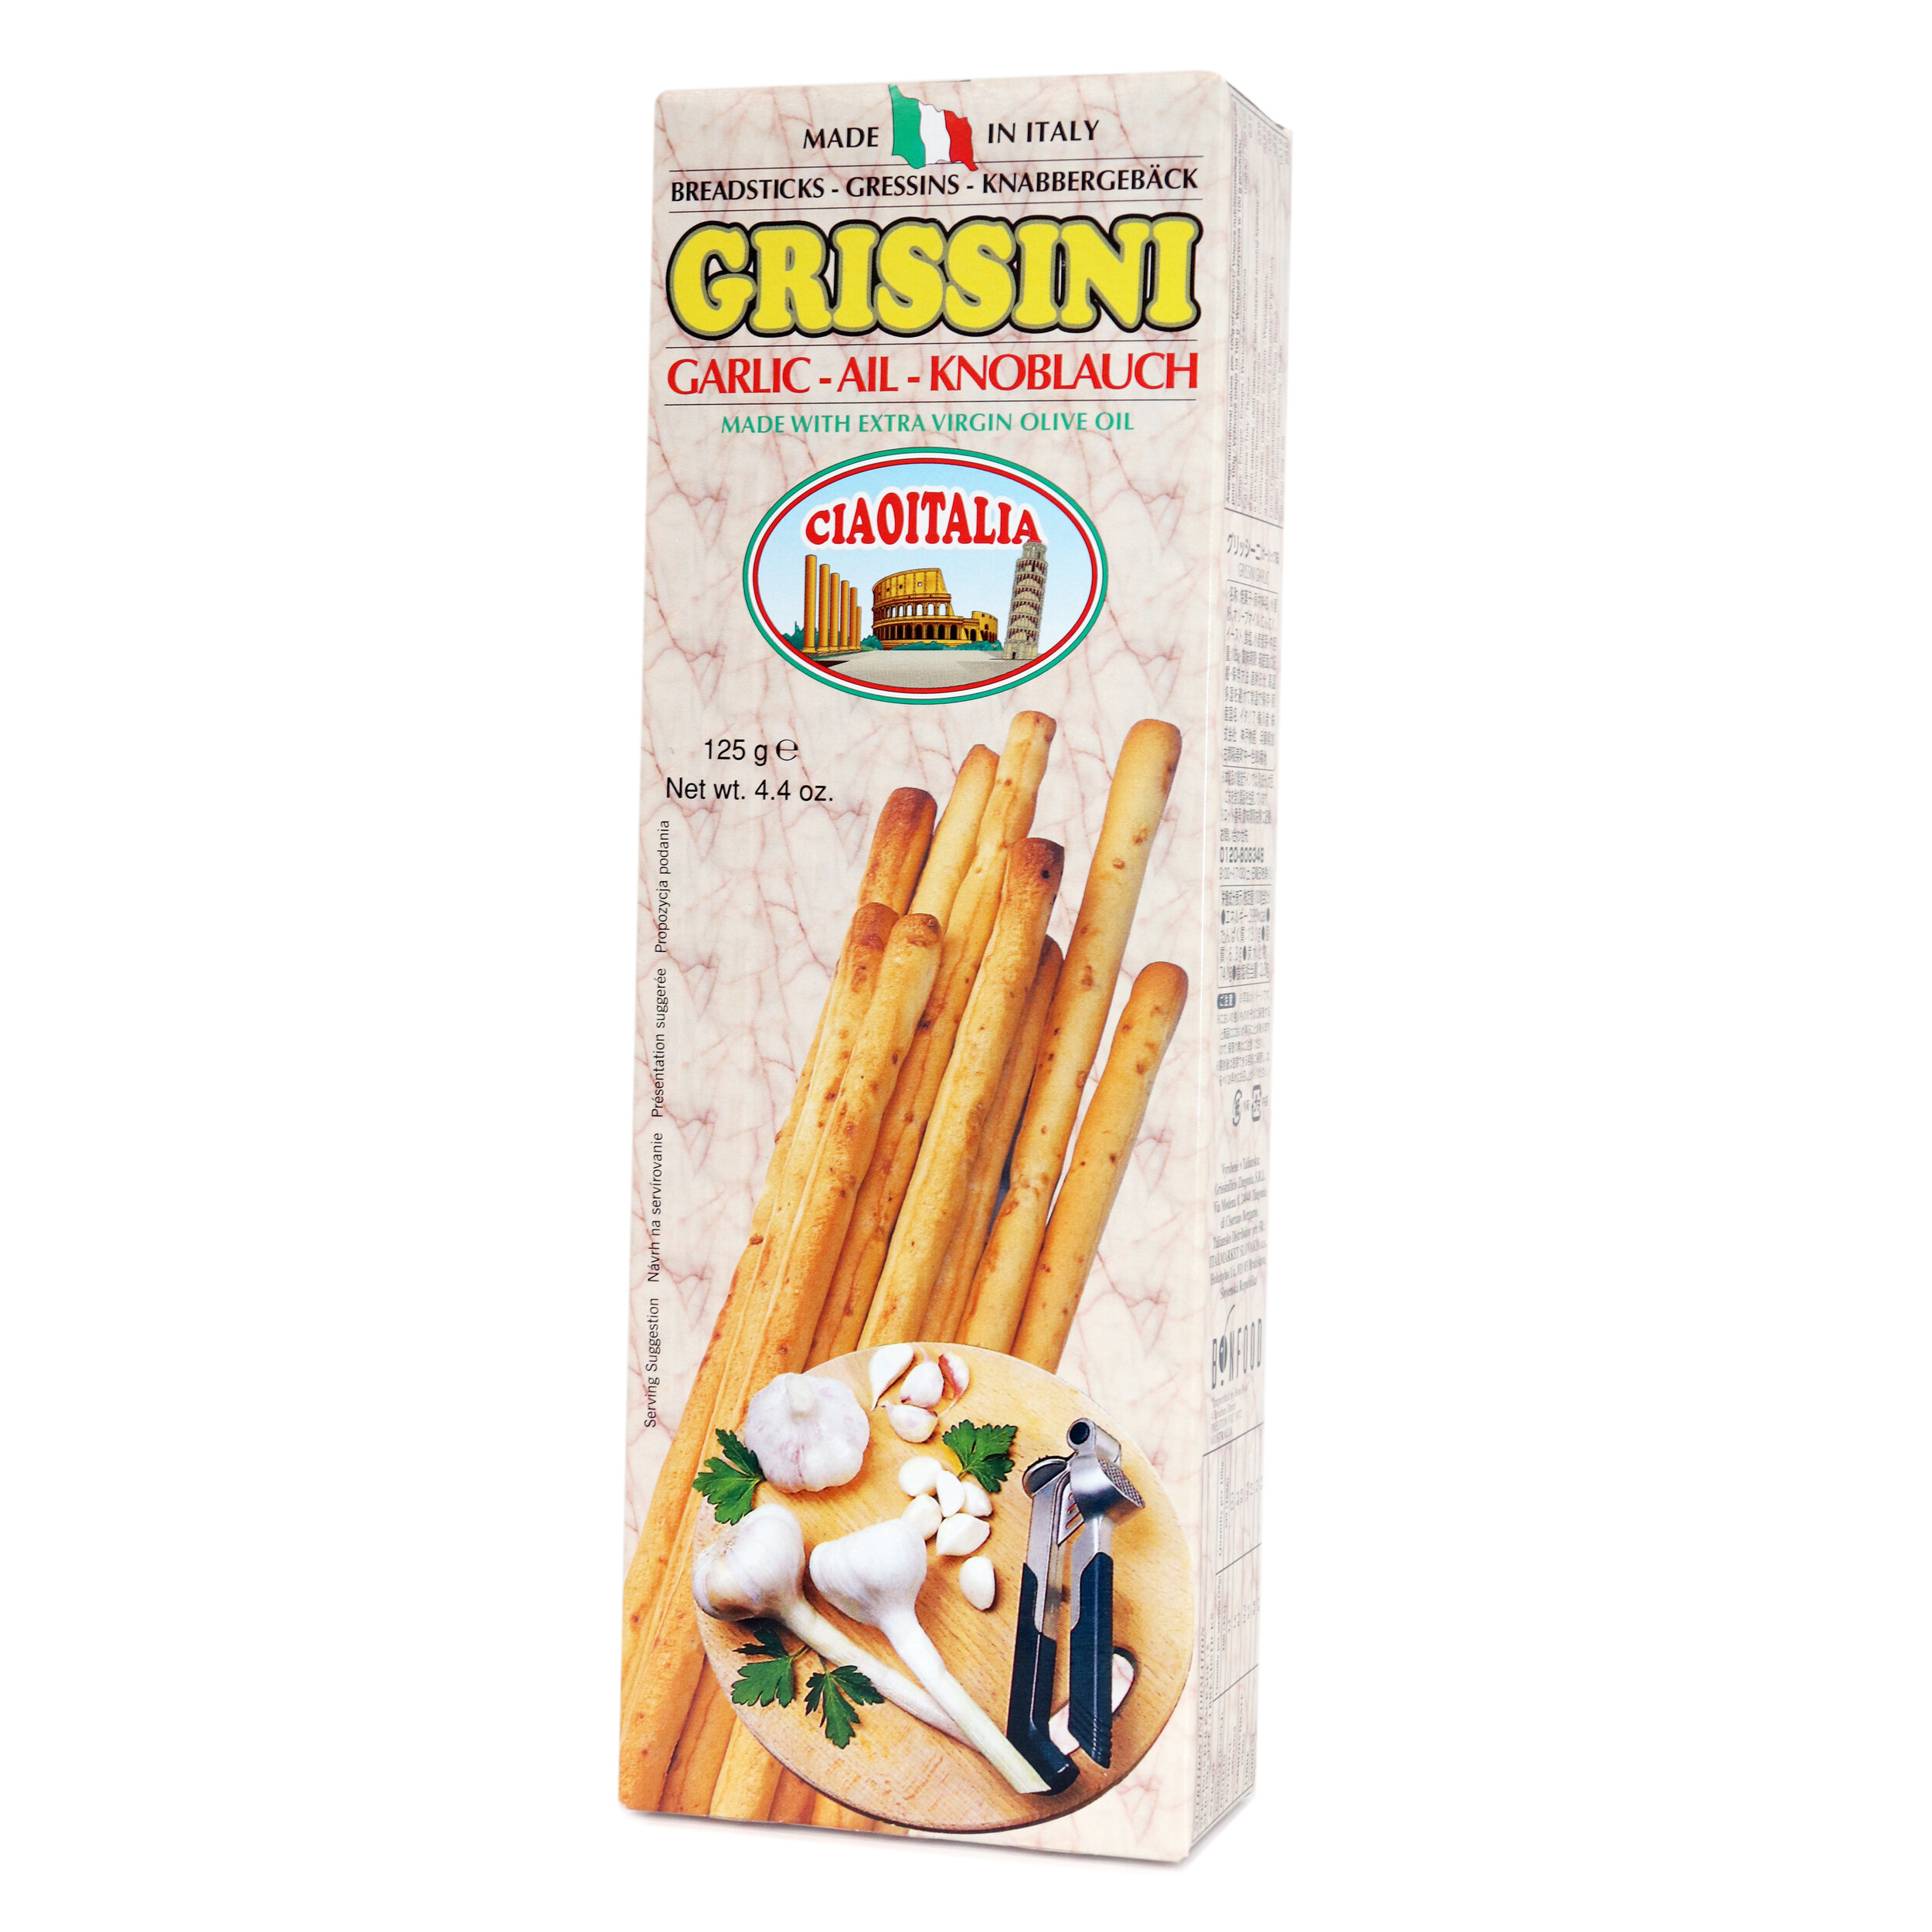 P1-Grissini garlic.jpg